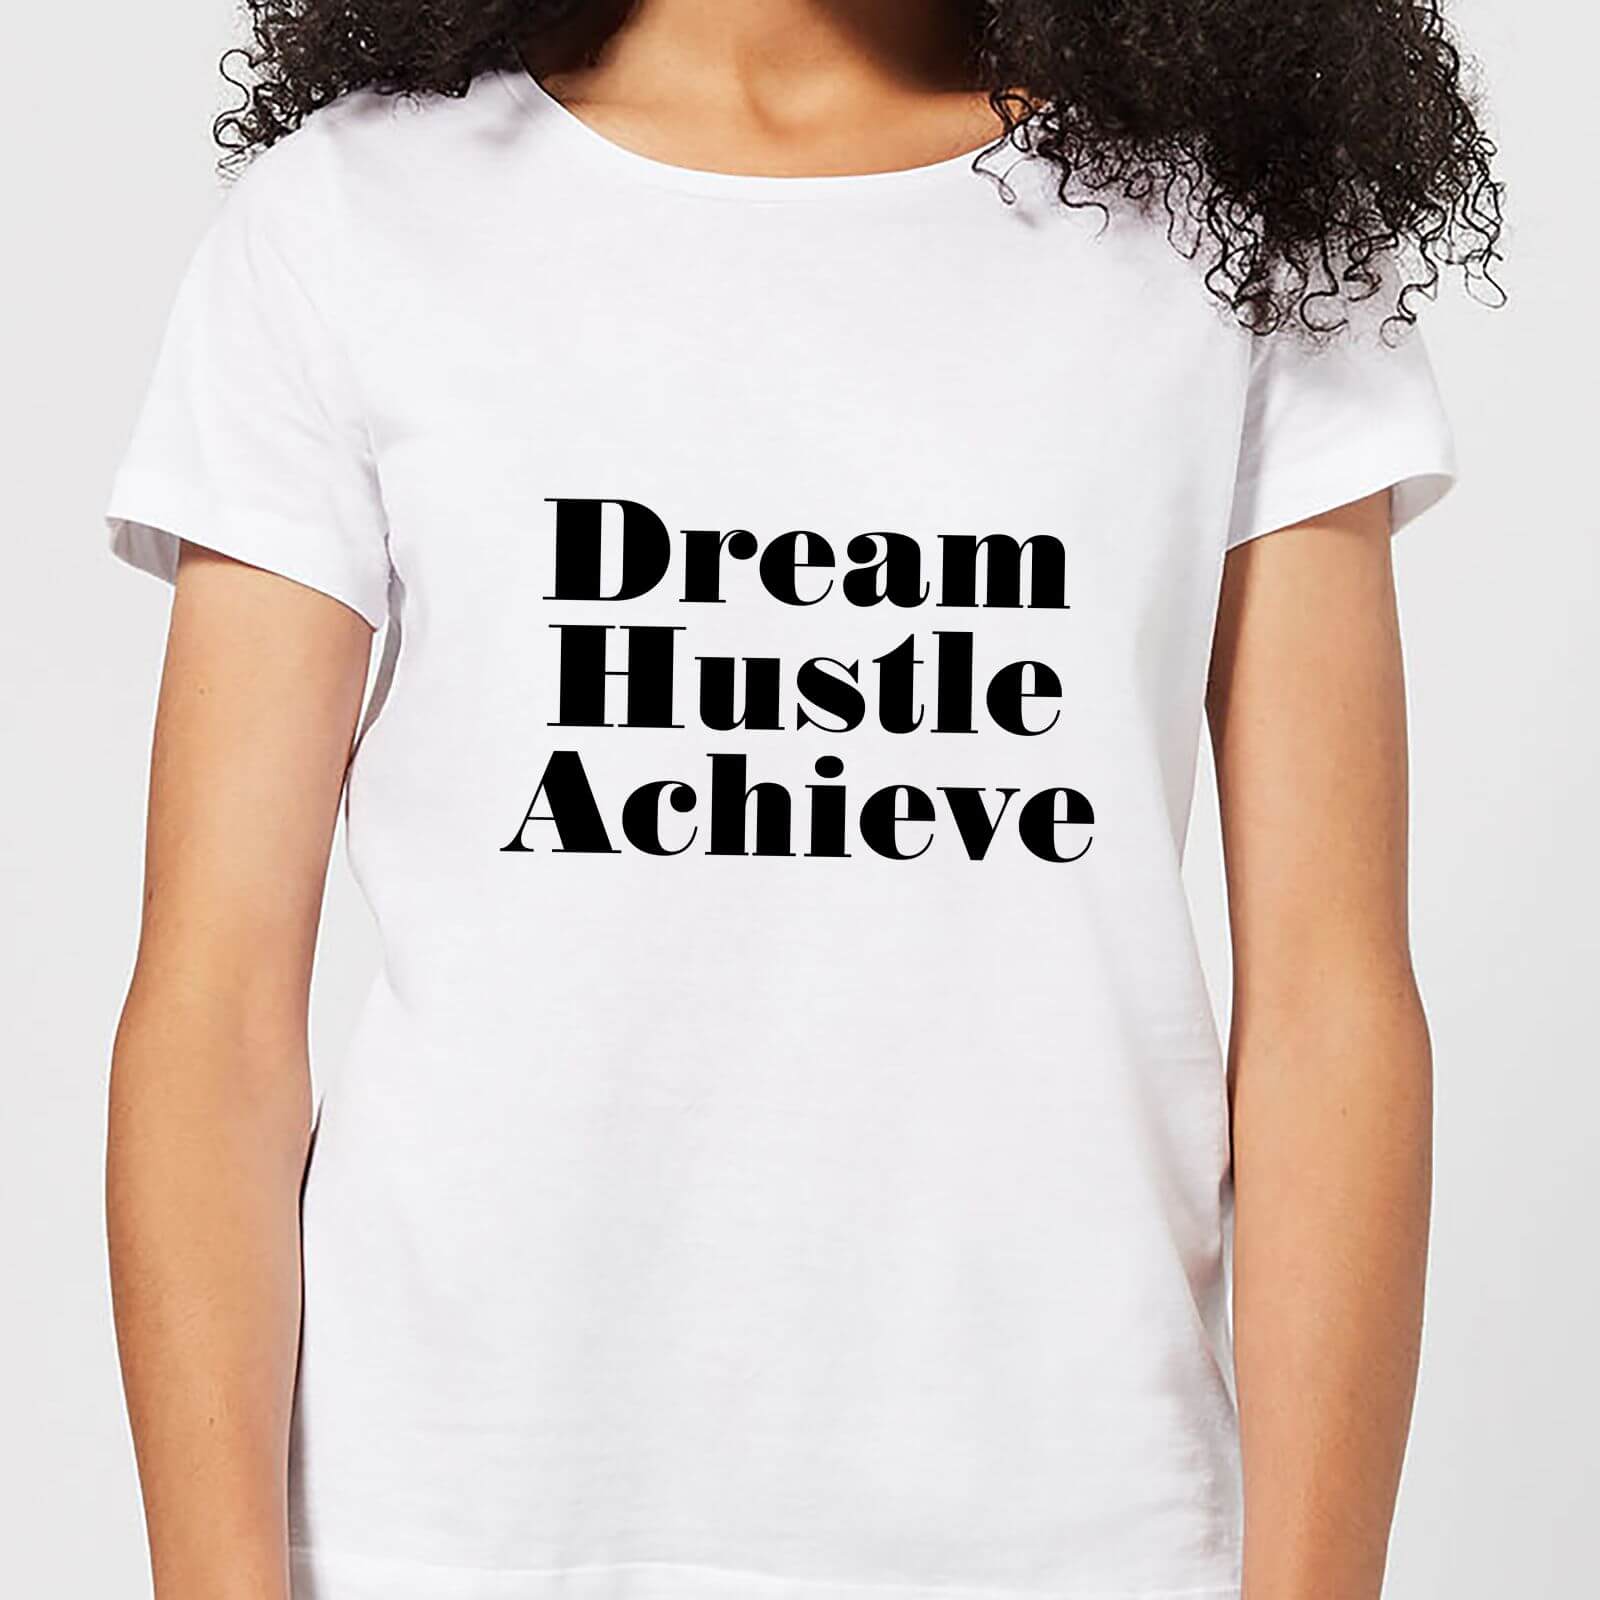 Dream Hustle Achieve Women's T-Shirt - White - M - White